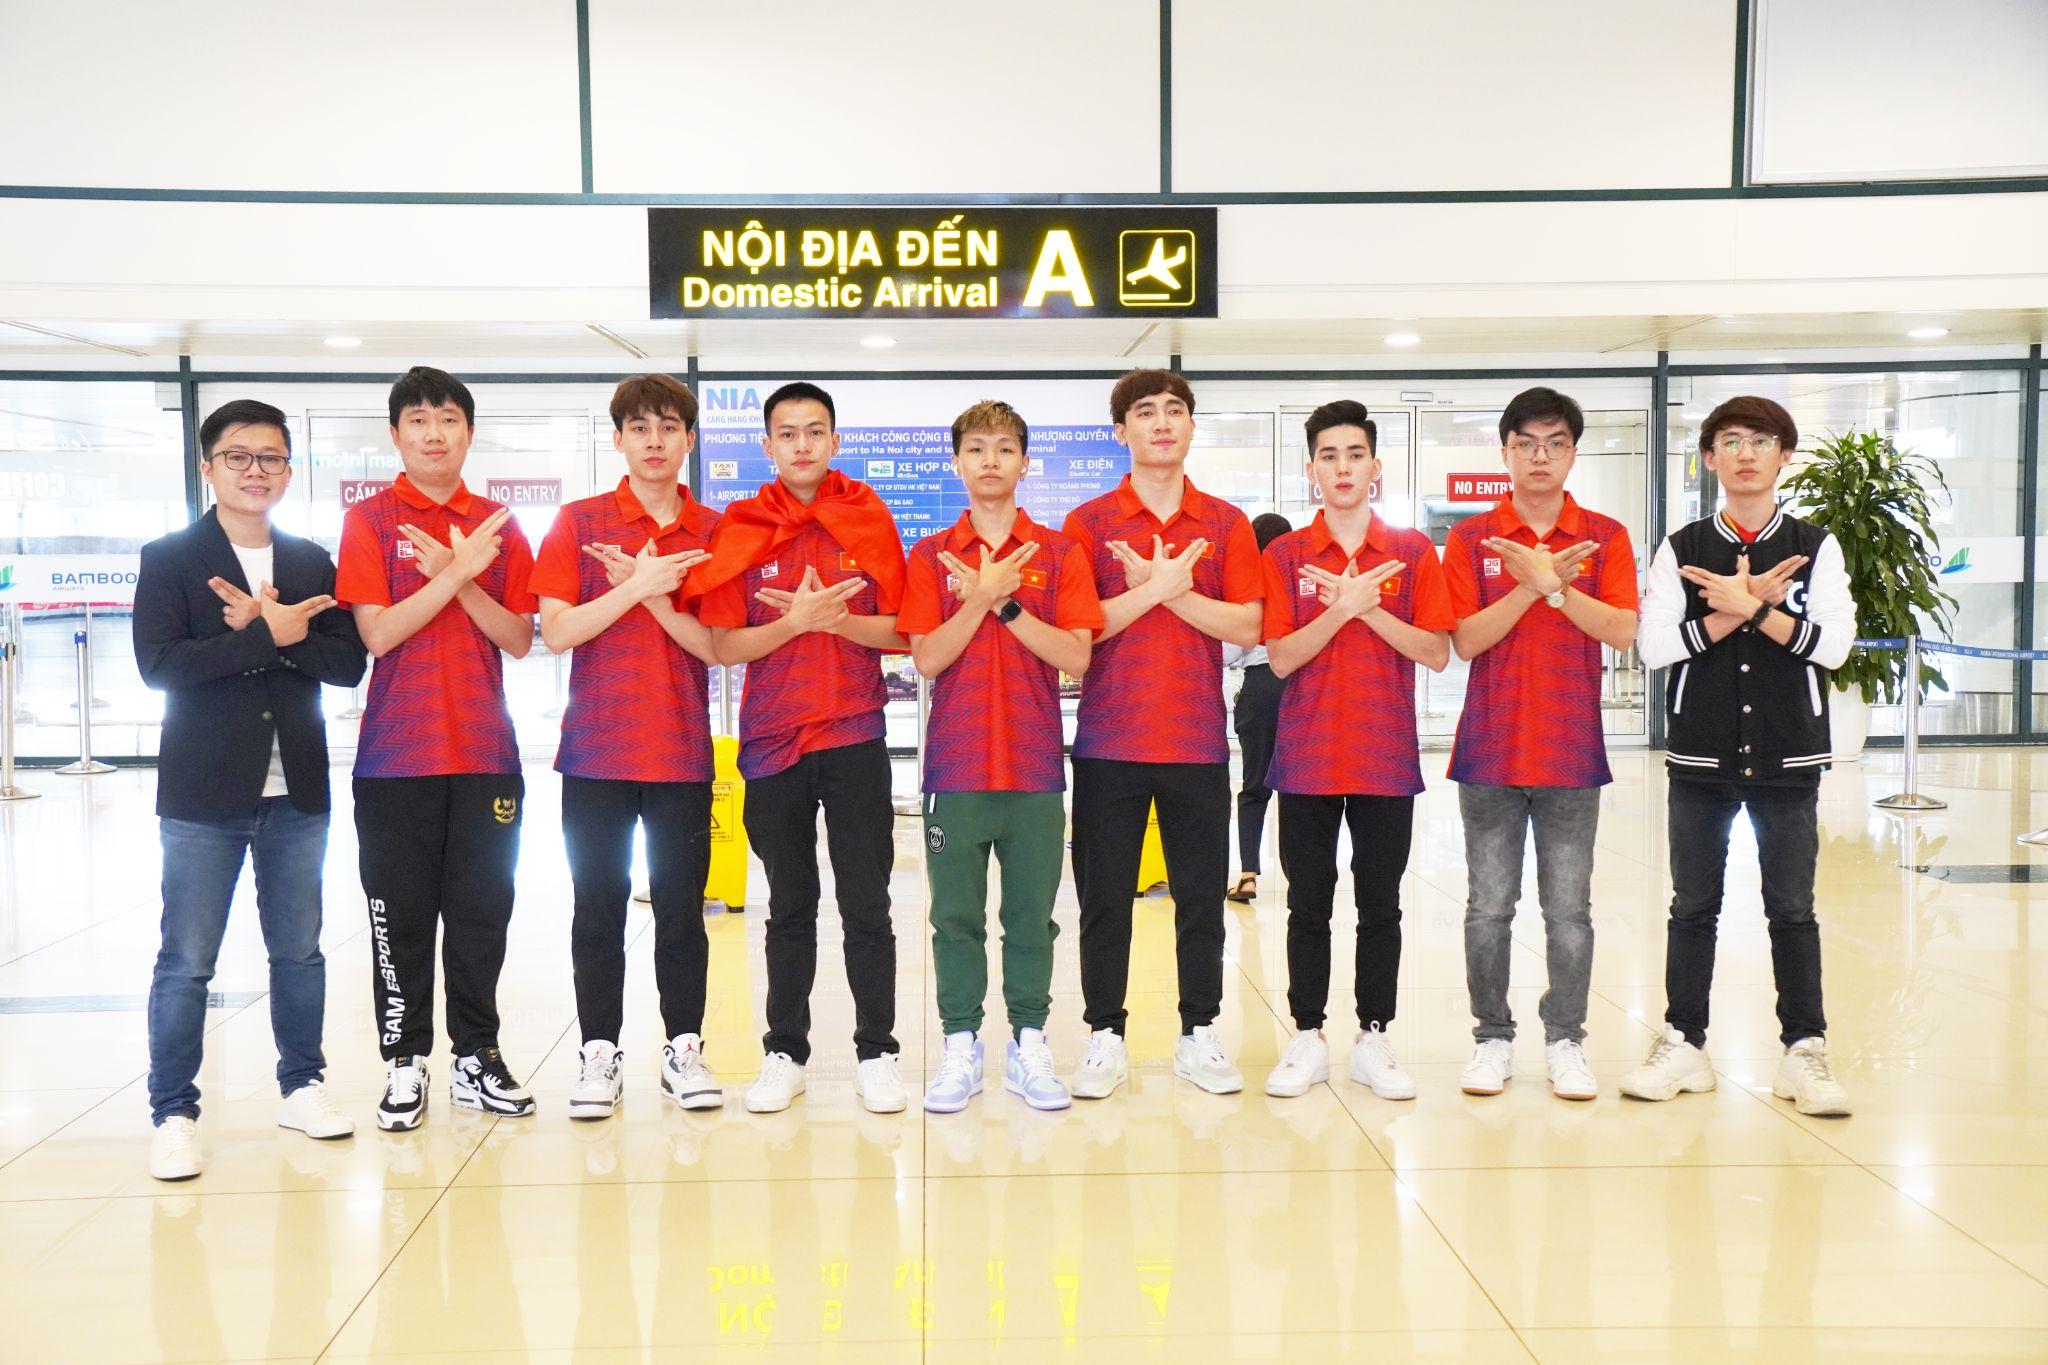 Đội tuyển Liên Minh Huyền Thoại Việt Nam đã có mặt tại Hà Nội, được dự đoán Huy chương Vàng cầm chắc trong tay